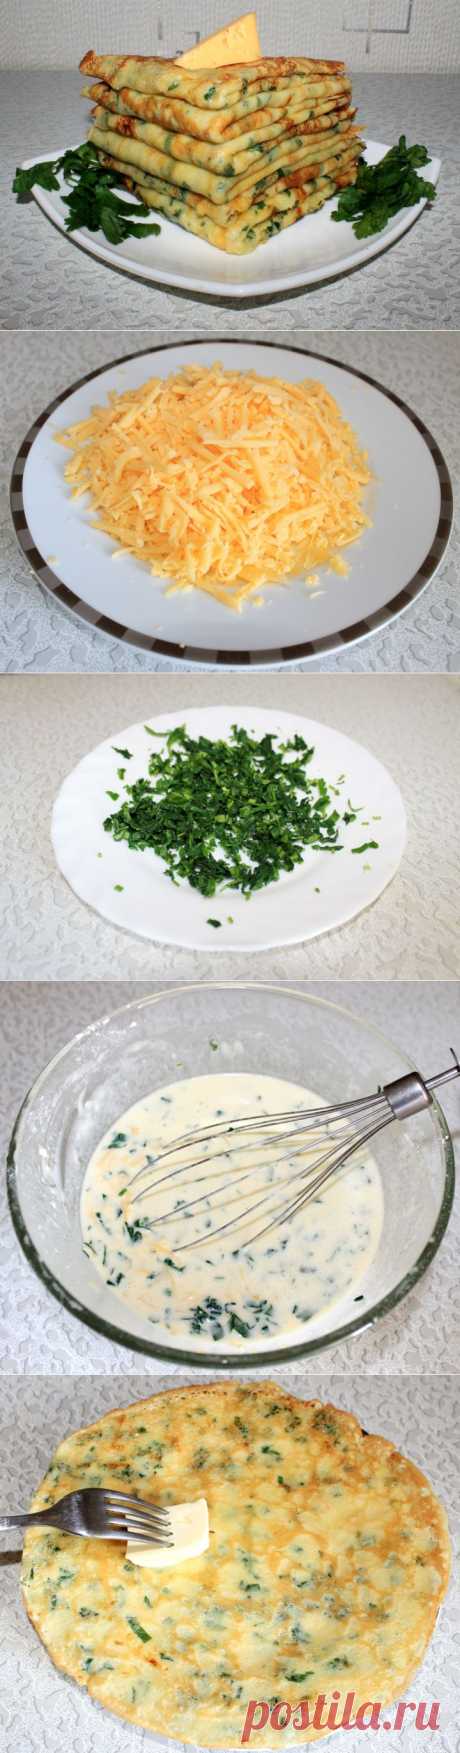 Сырные блинчики с петрушкой - пошаговый рецепт с фото - сырные блинчики с петрушкой - как готовить: ингредиенты, состав, время приготовления - Леди@Mail.Ru